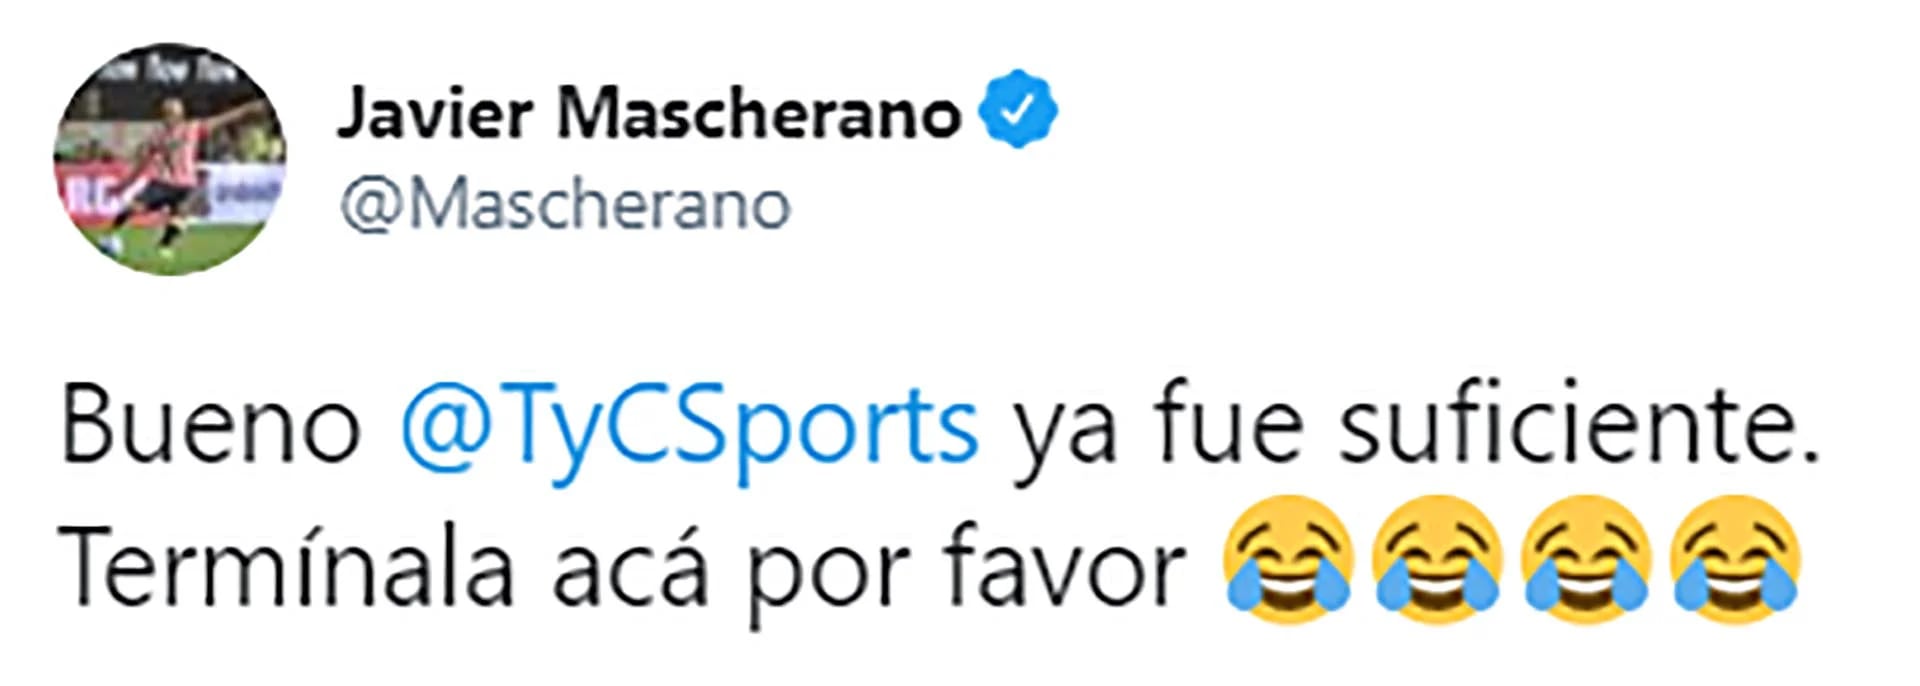 Twitter @Mascherano